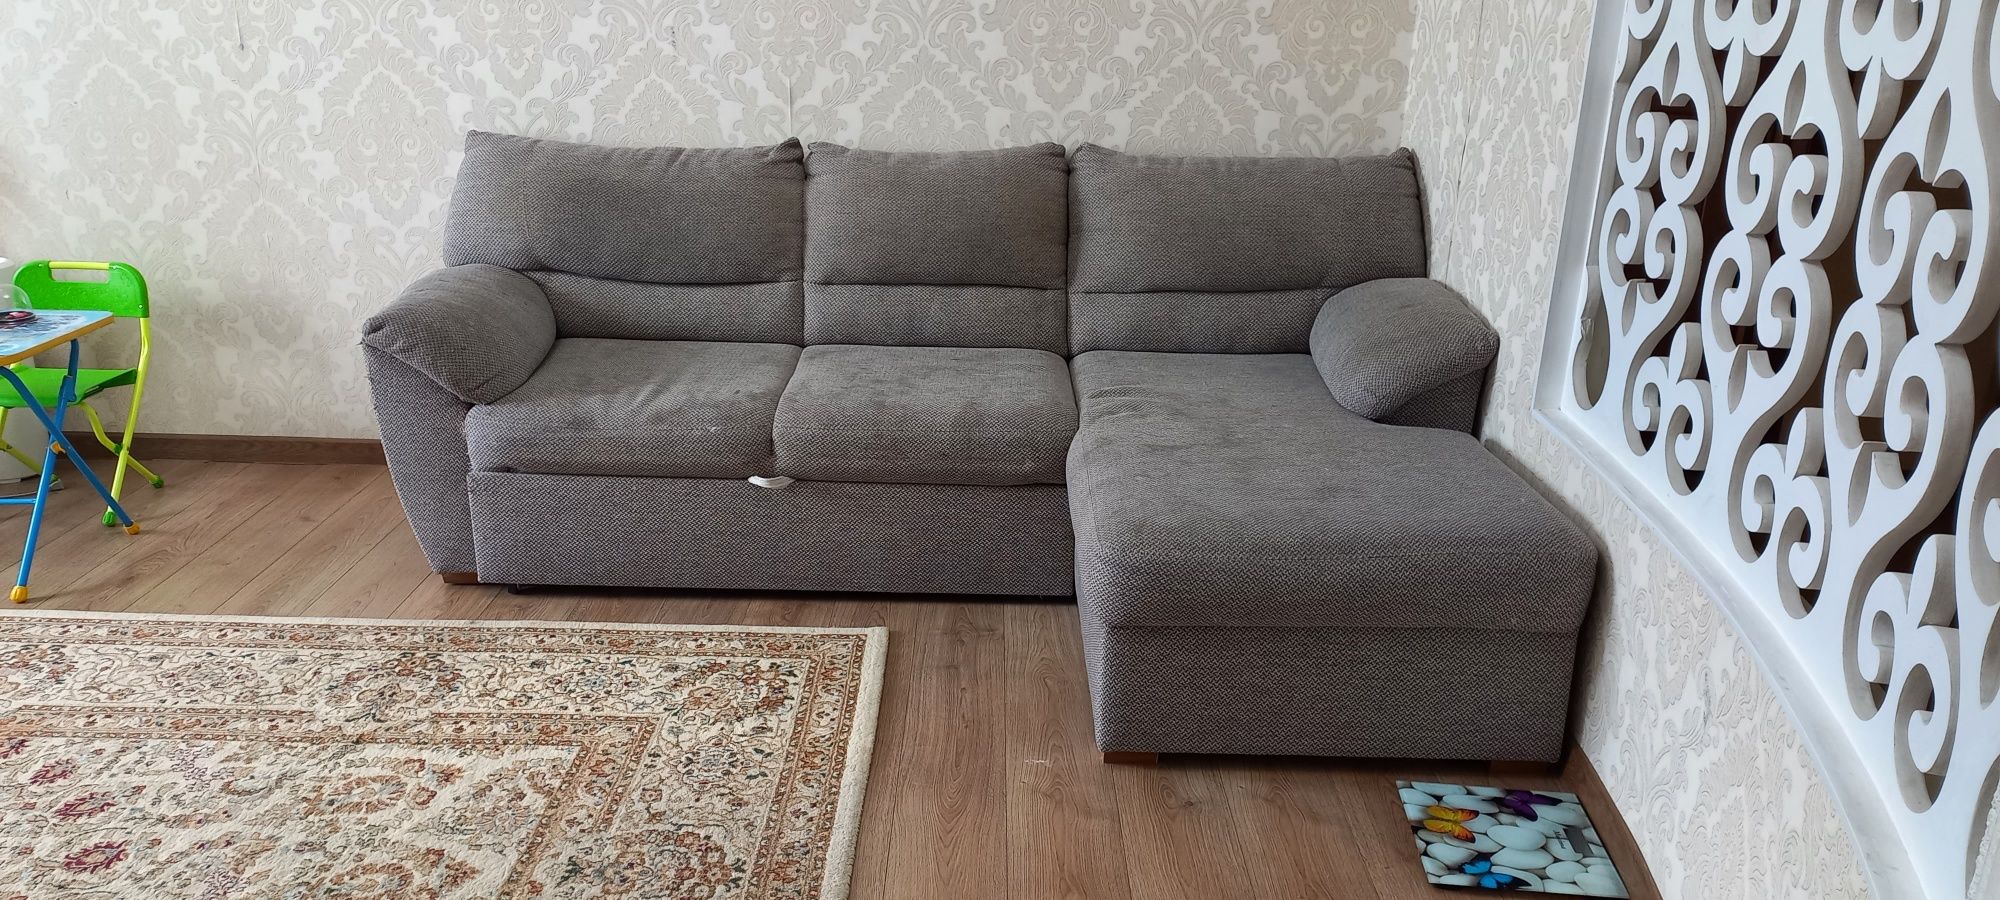 Продам белорусский диван